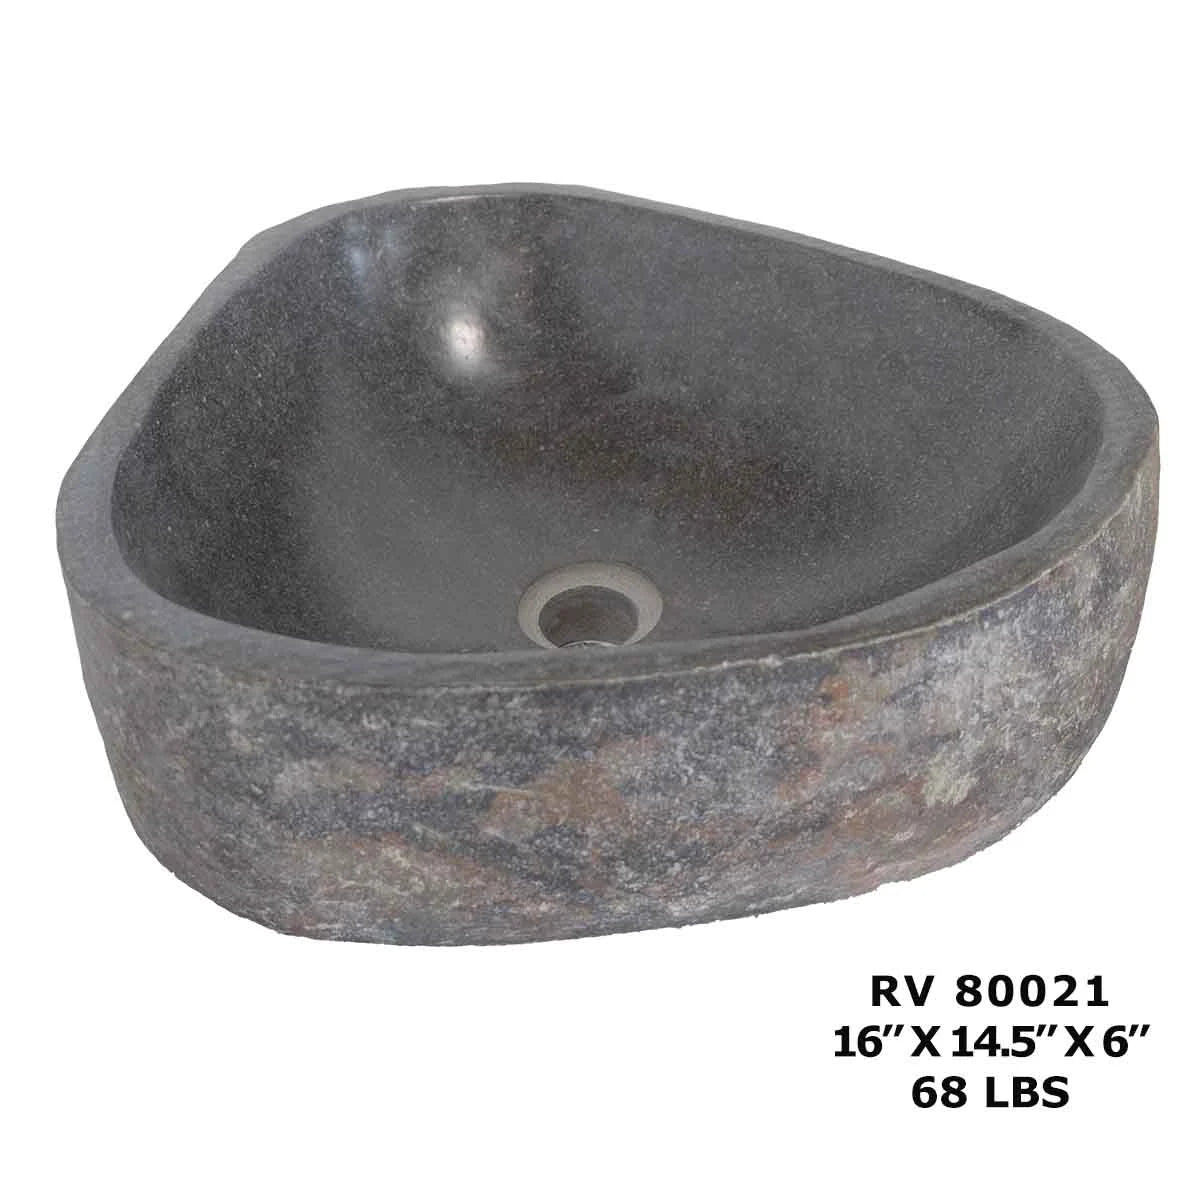 RV80021-Oval Bathroom Sink - River Stone Wash Basin Sink